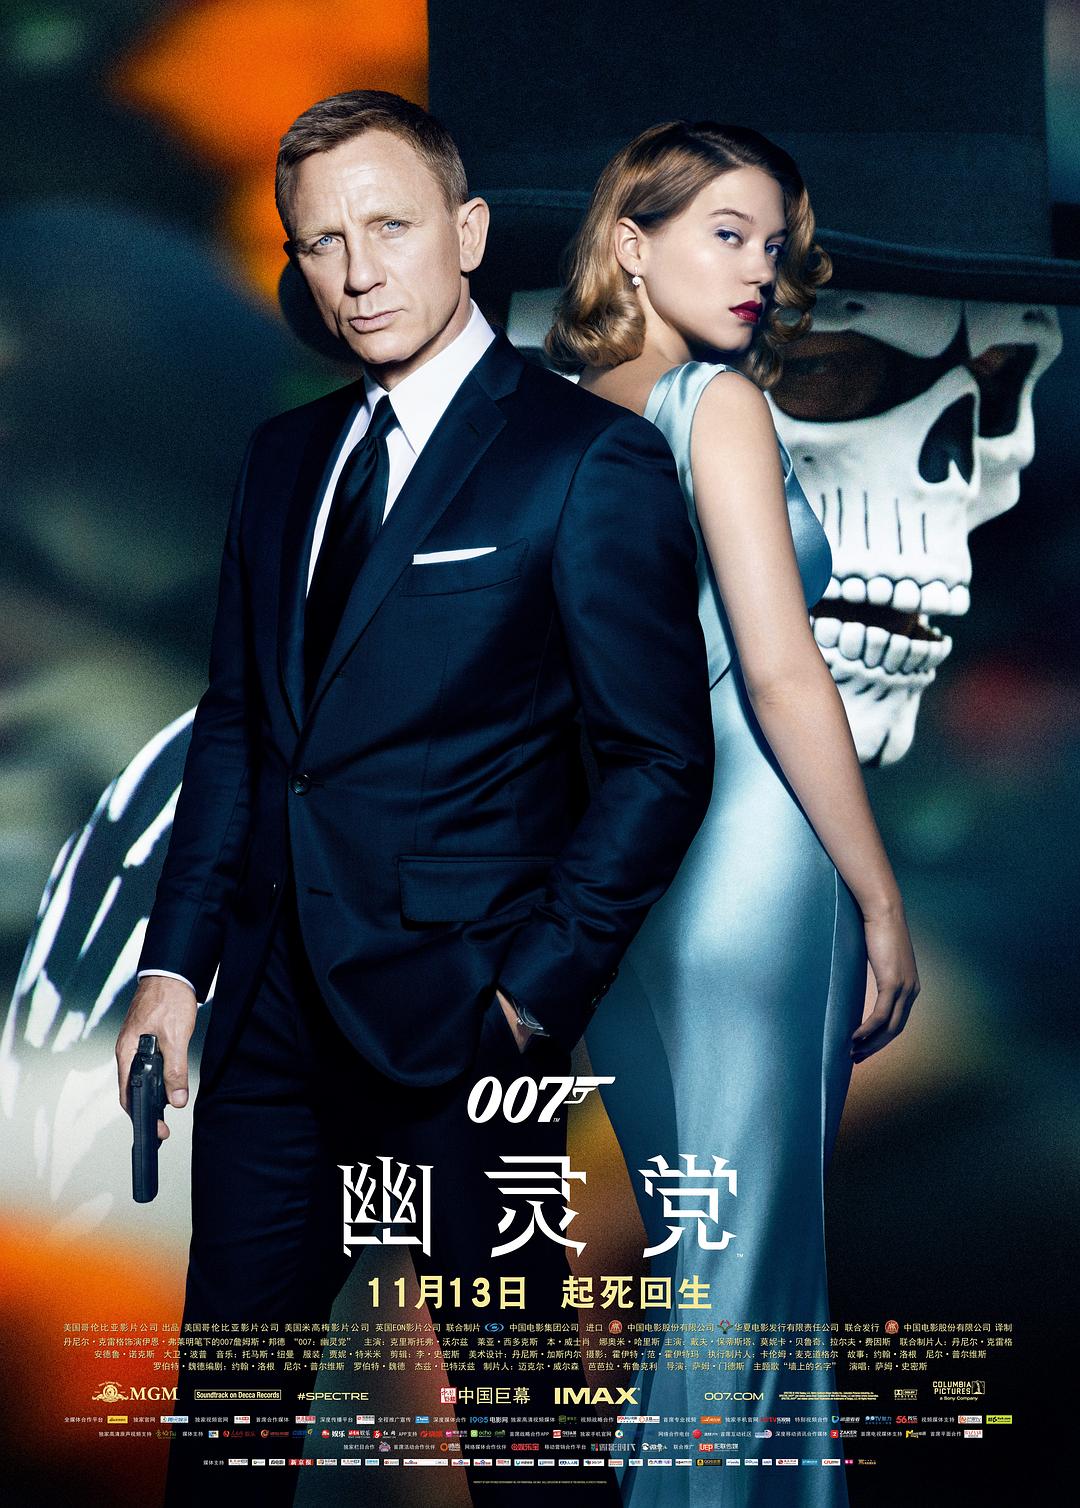 007:鬼魂党/007系列24:大破鬼魂危机 Spectre.2015.1080p.BluRay.x264.DTS-HD.MA.7.1-SWTYBLZ 20.16GB-1.png